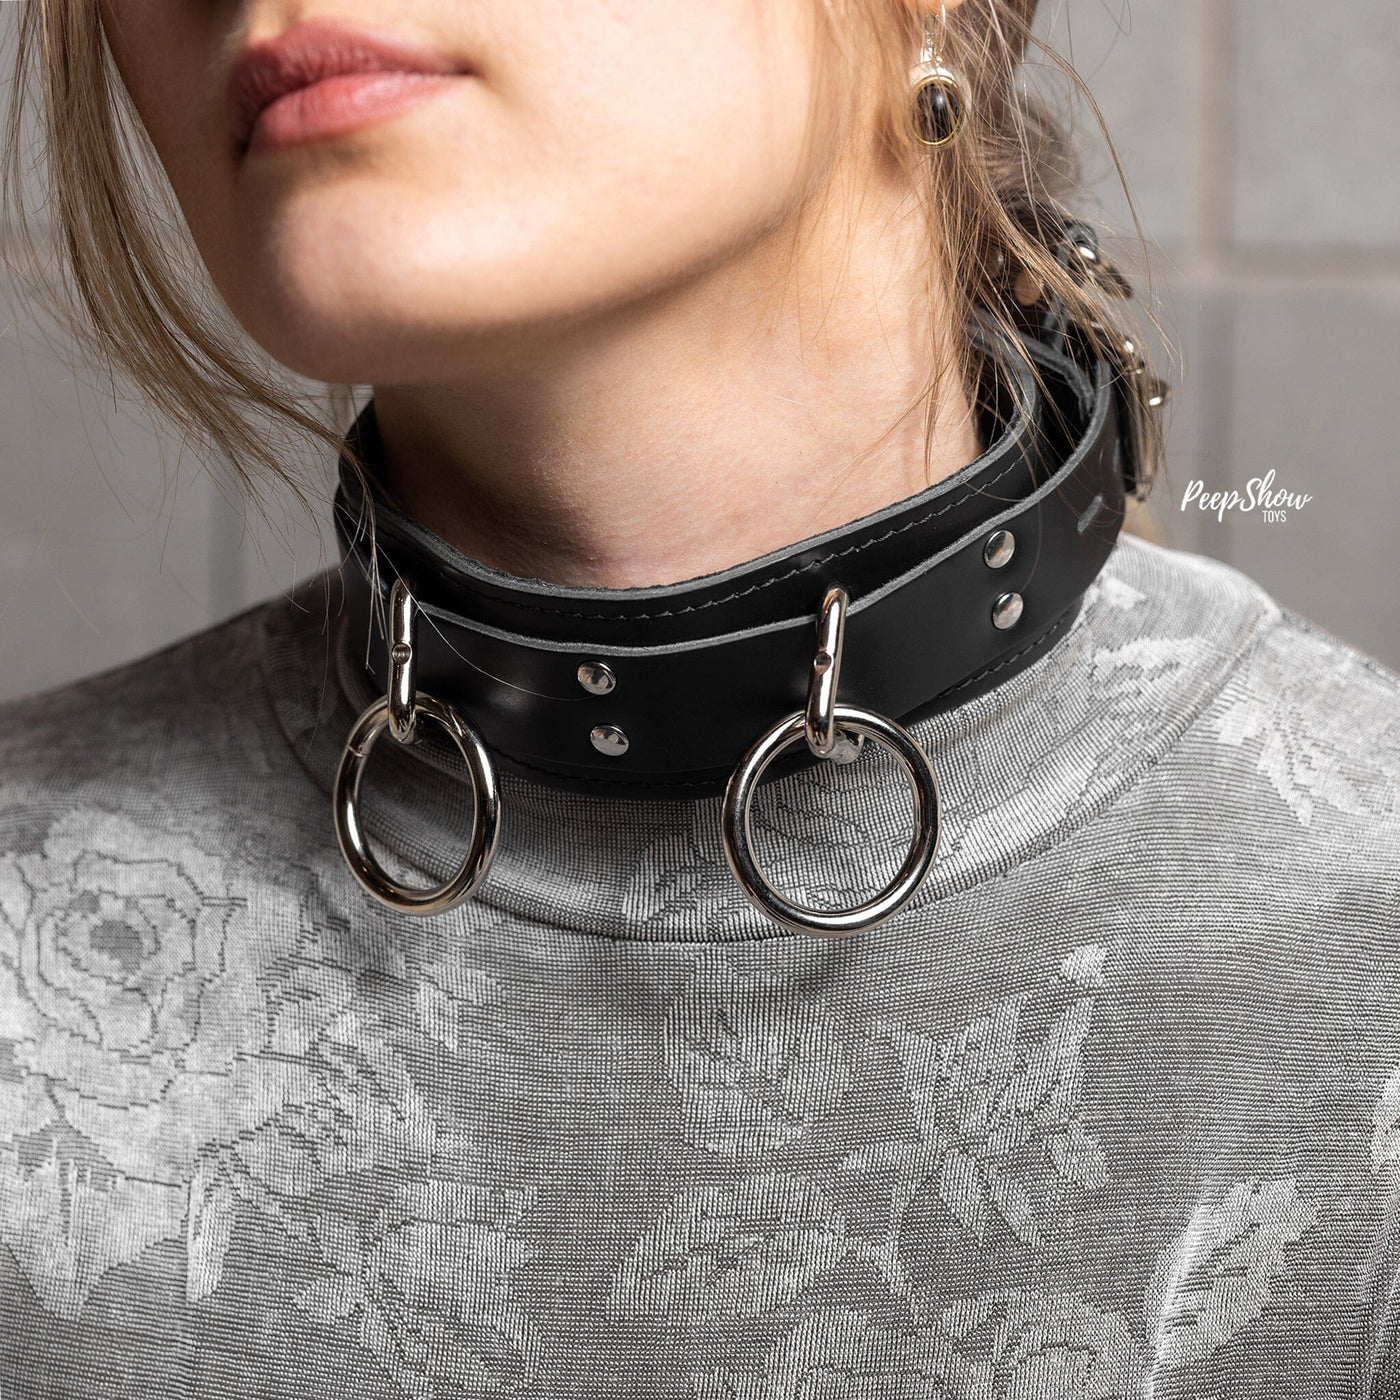 Locking 3 Ring Leather Collar